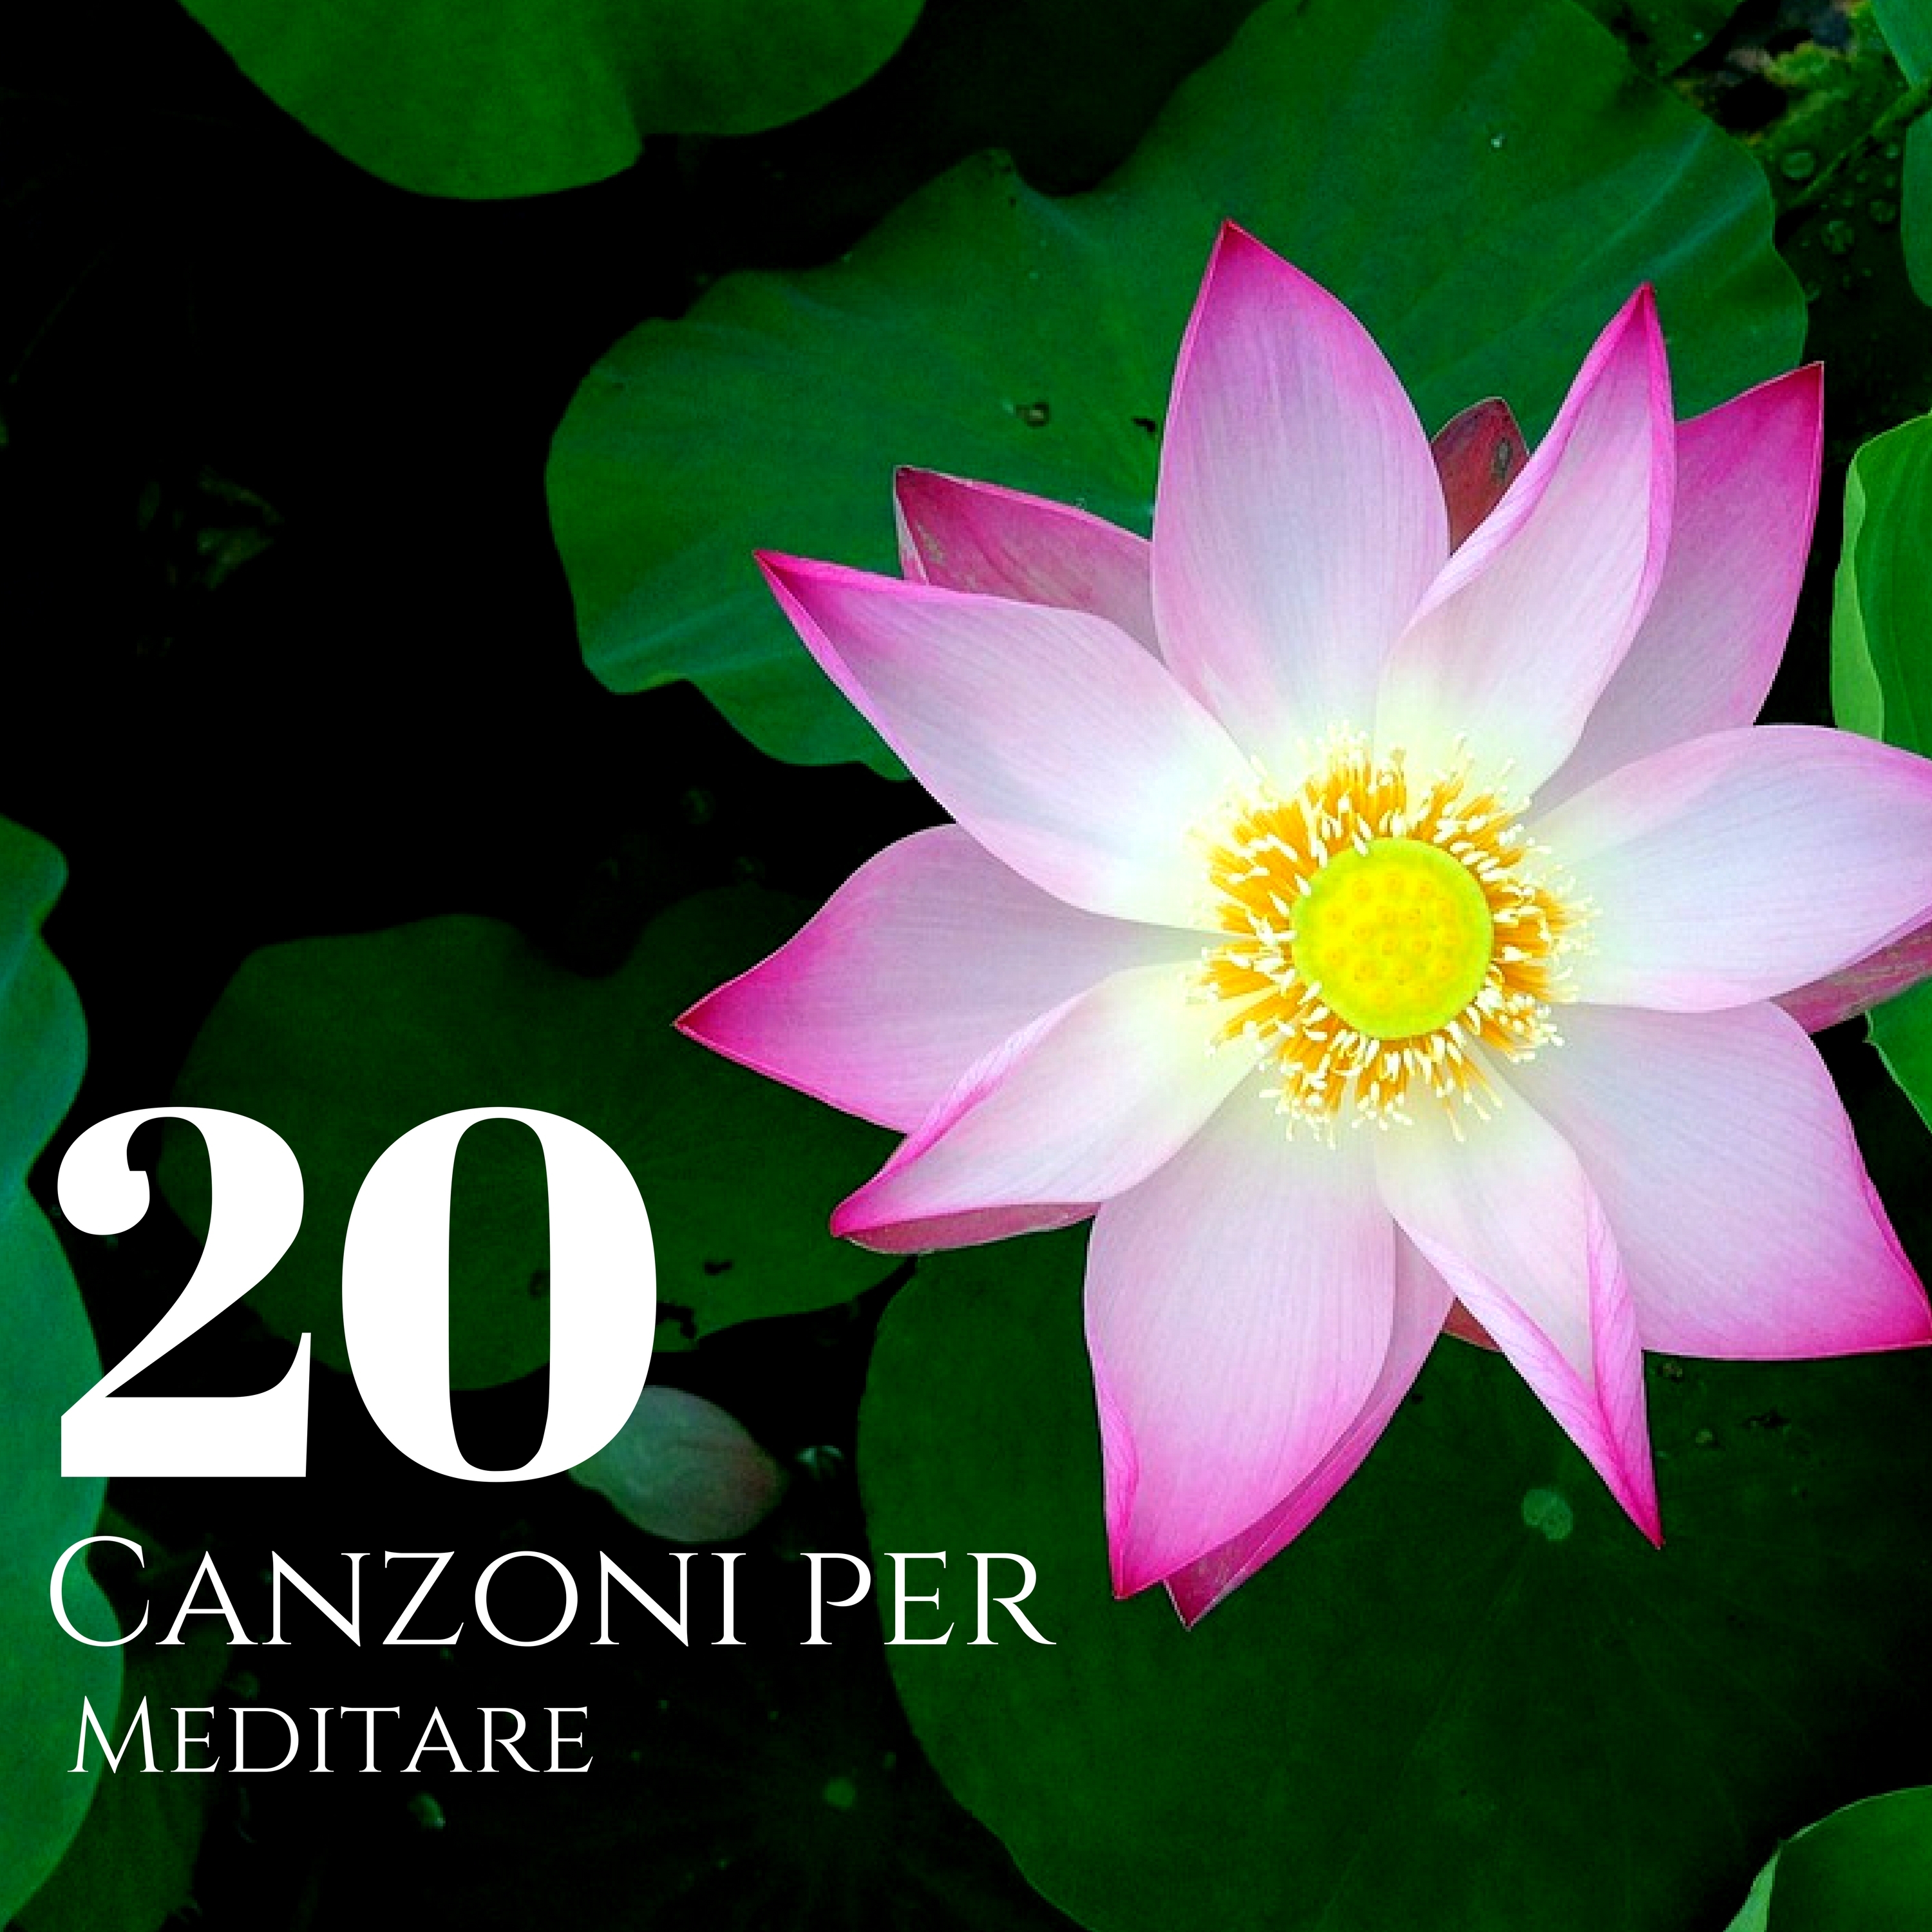 20 Canzoni per Meditare - Musica da Meditazione per Rilassamento Muscolare Progressivo